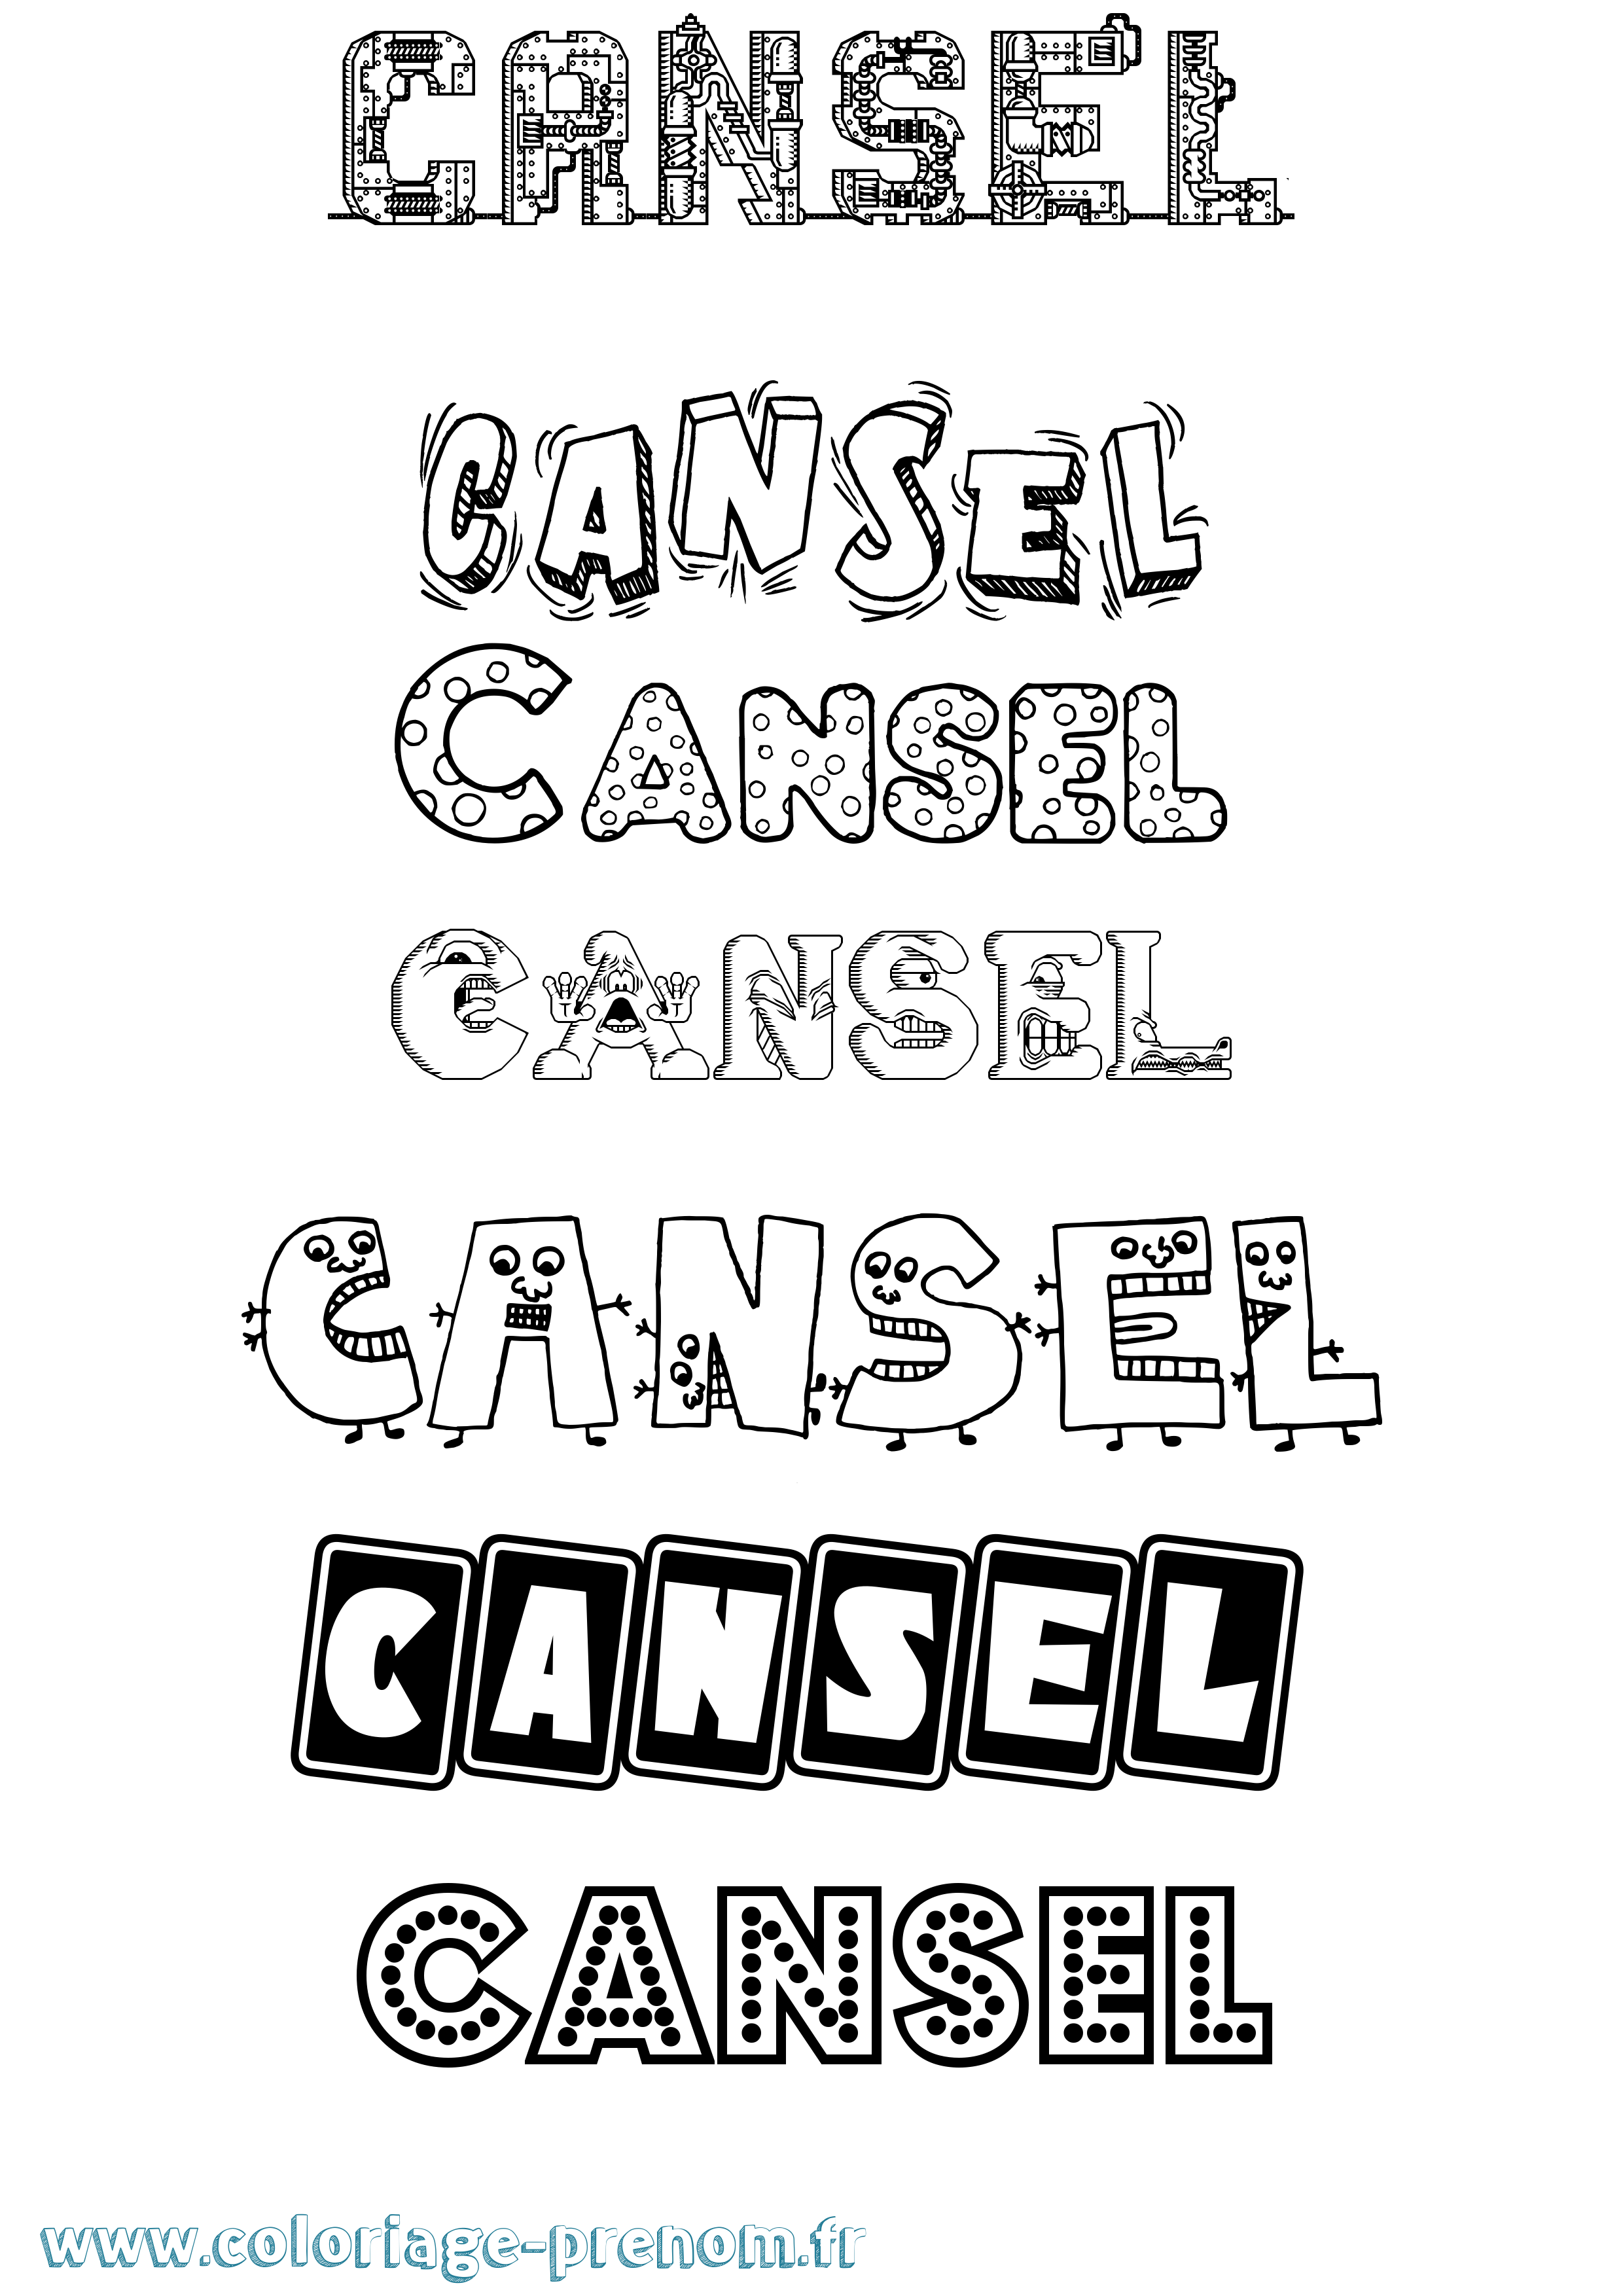 Coloriage prénom Cansel Fun